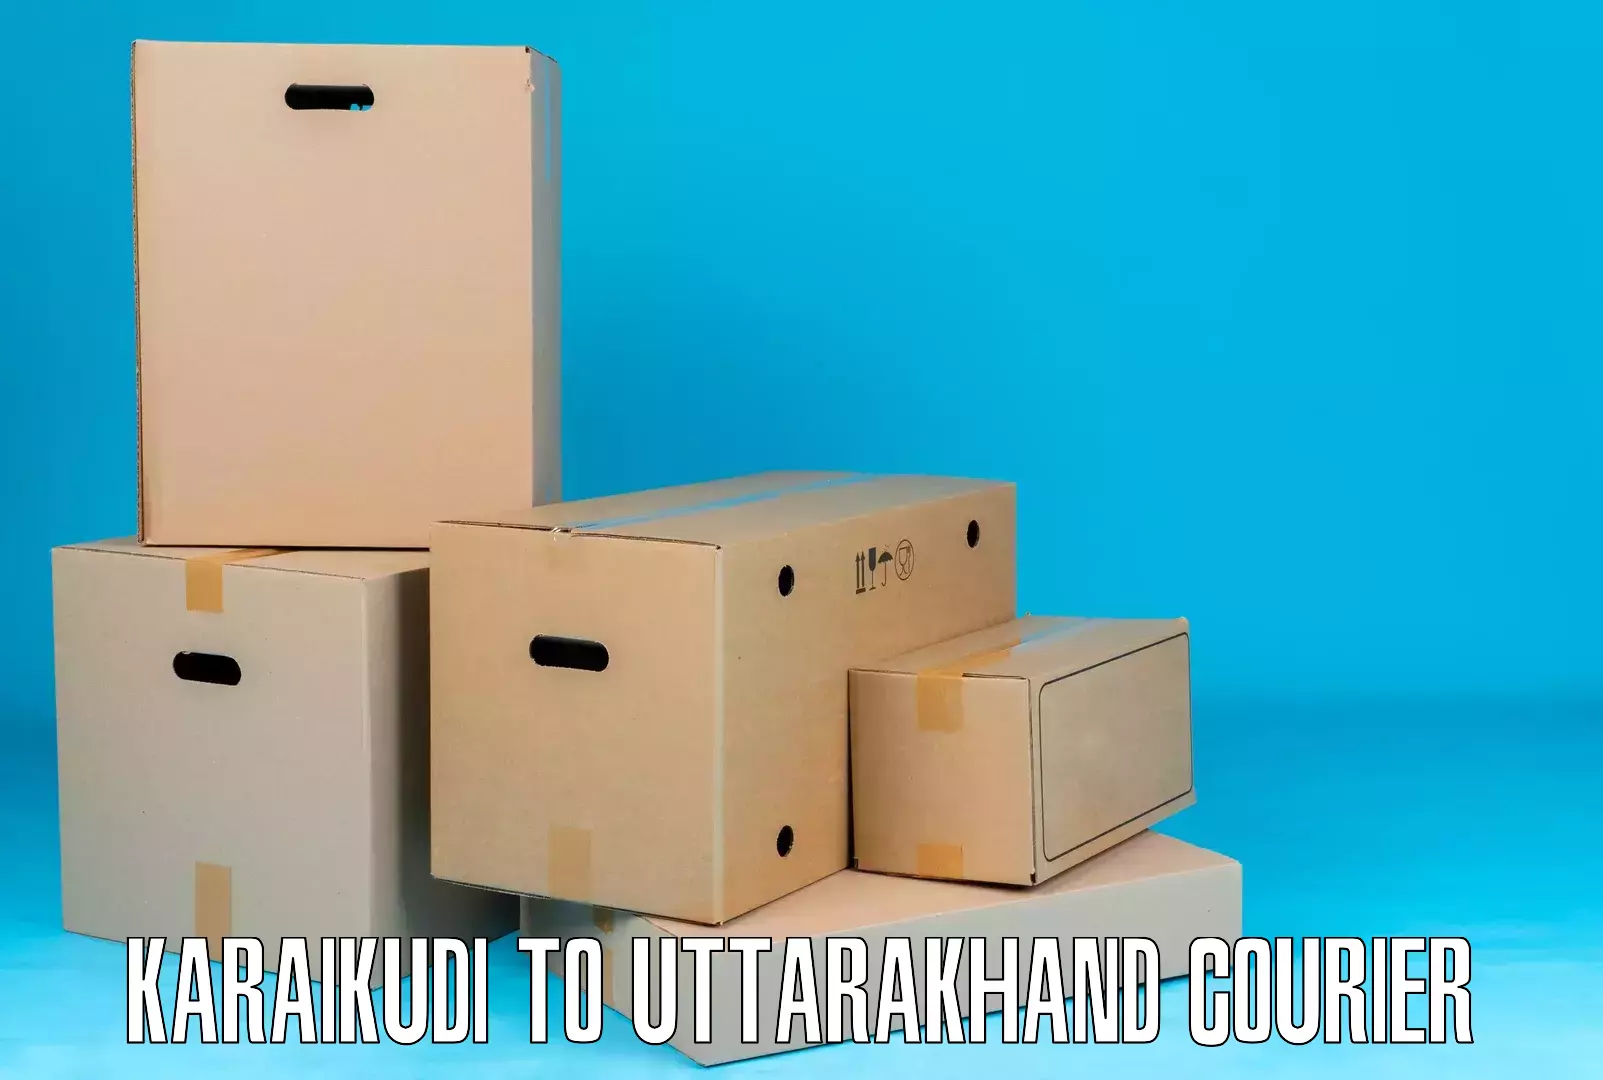 Dynamic courier operations Karaikudi to Someshwar